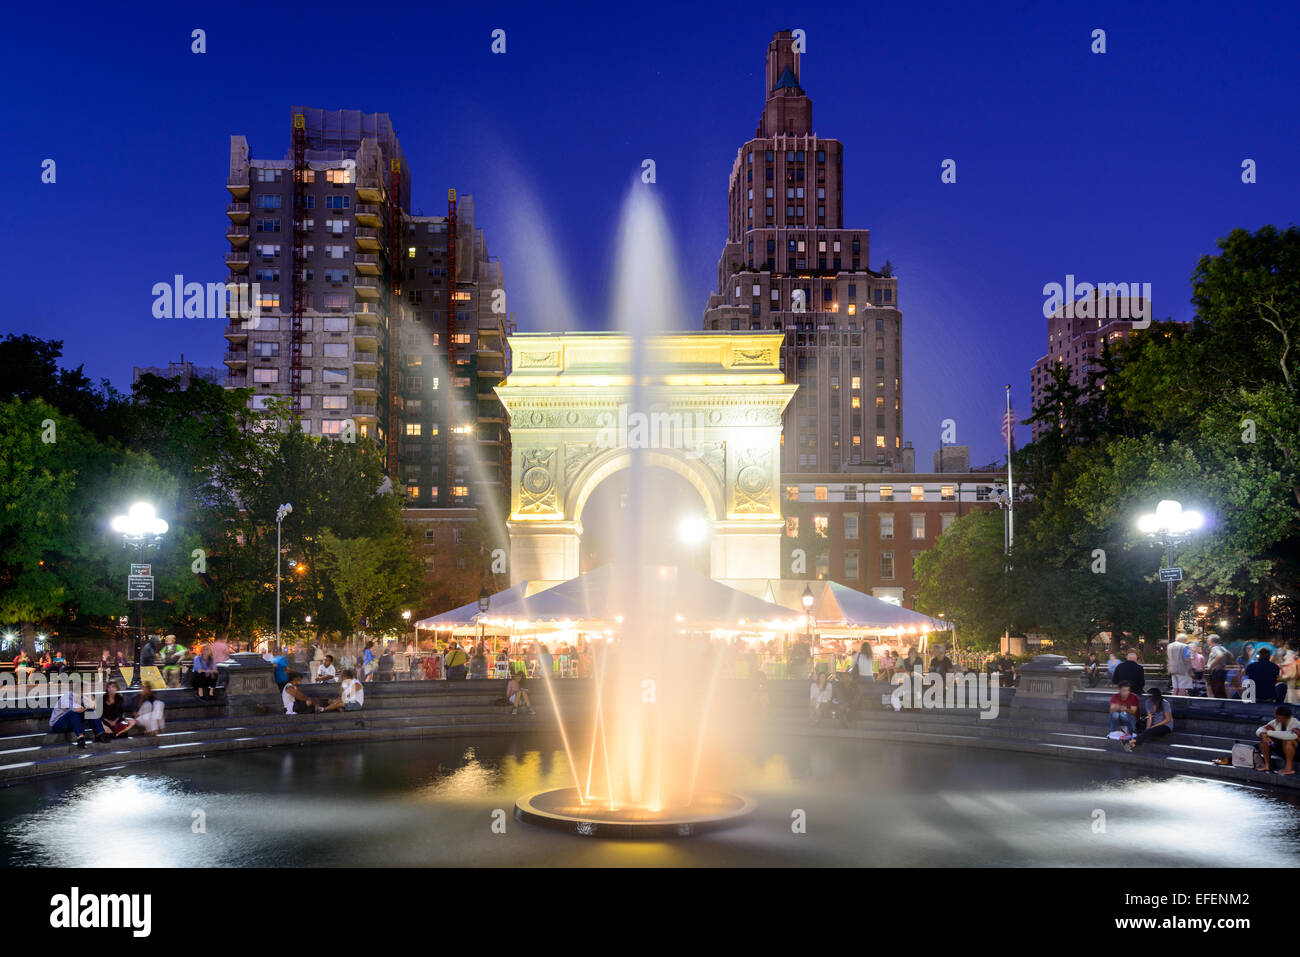 La folla godere di una notte estiva a Washington Square Park. Foto Stock